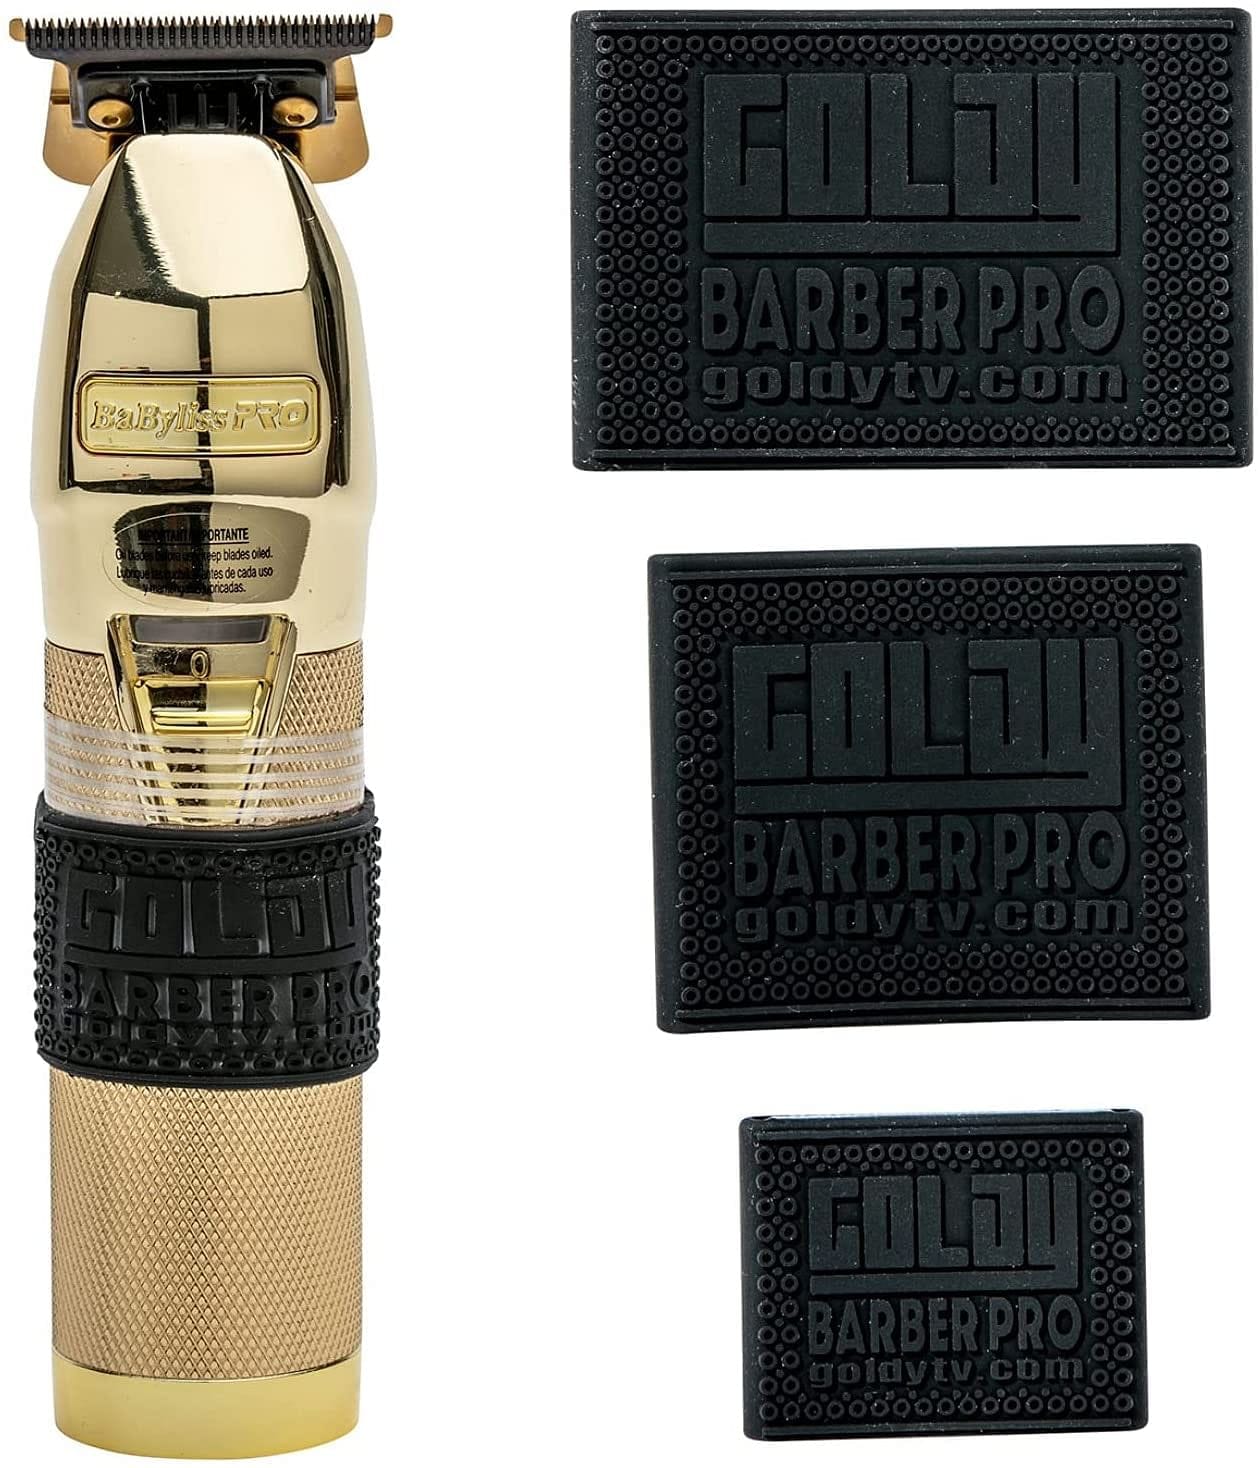 Kustom Clippers Premium Clipper Grip Bands 3 PCS, Clipper grips for  Barbers, Clipper sleeve for barber tools, Non slip, Heat resistant (BLACK)